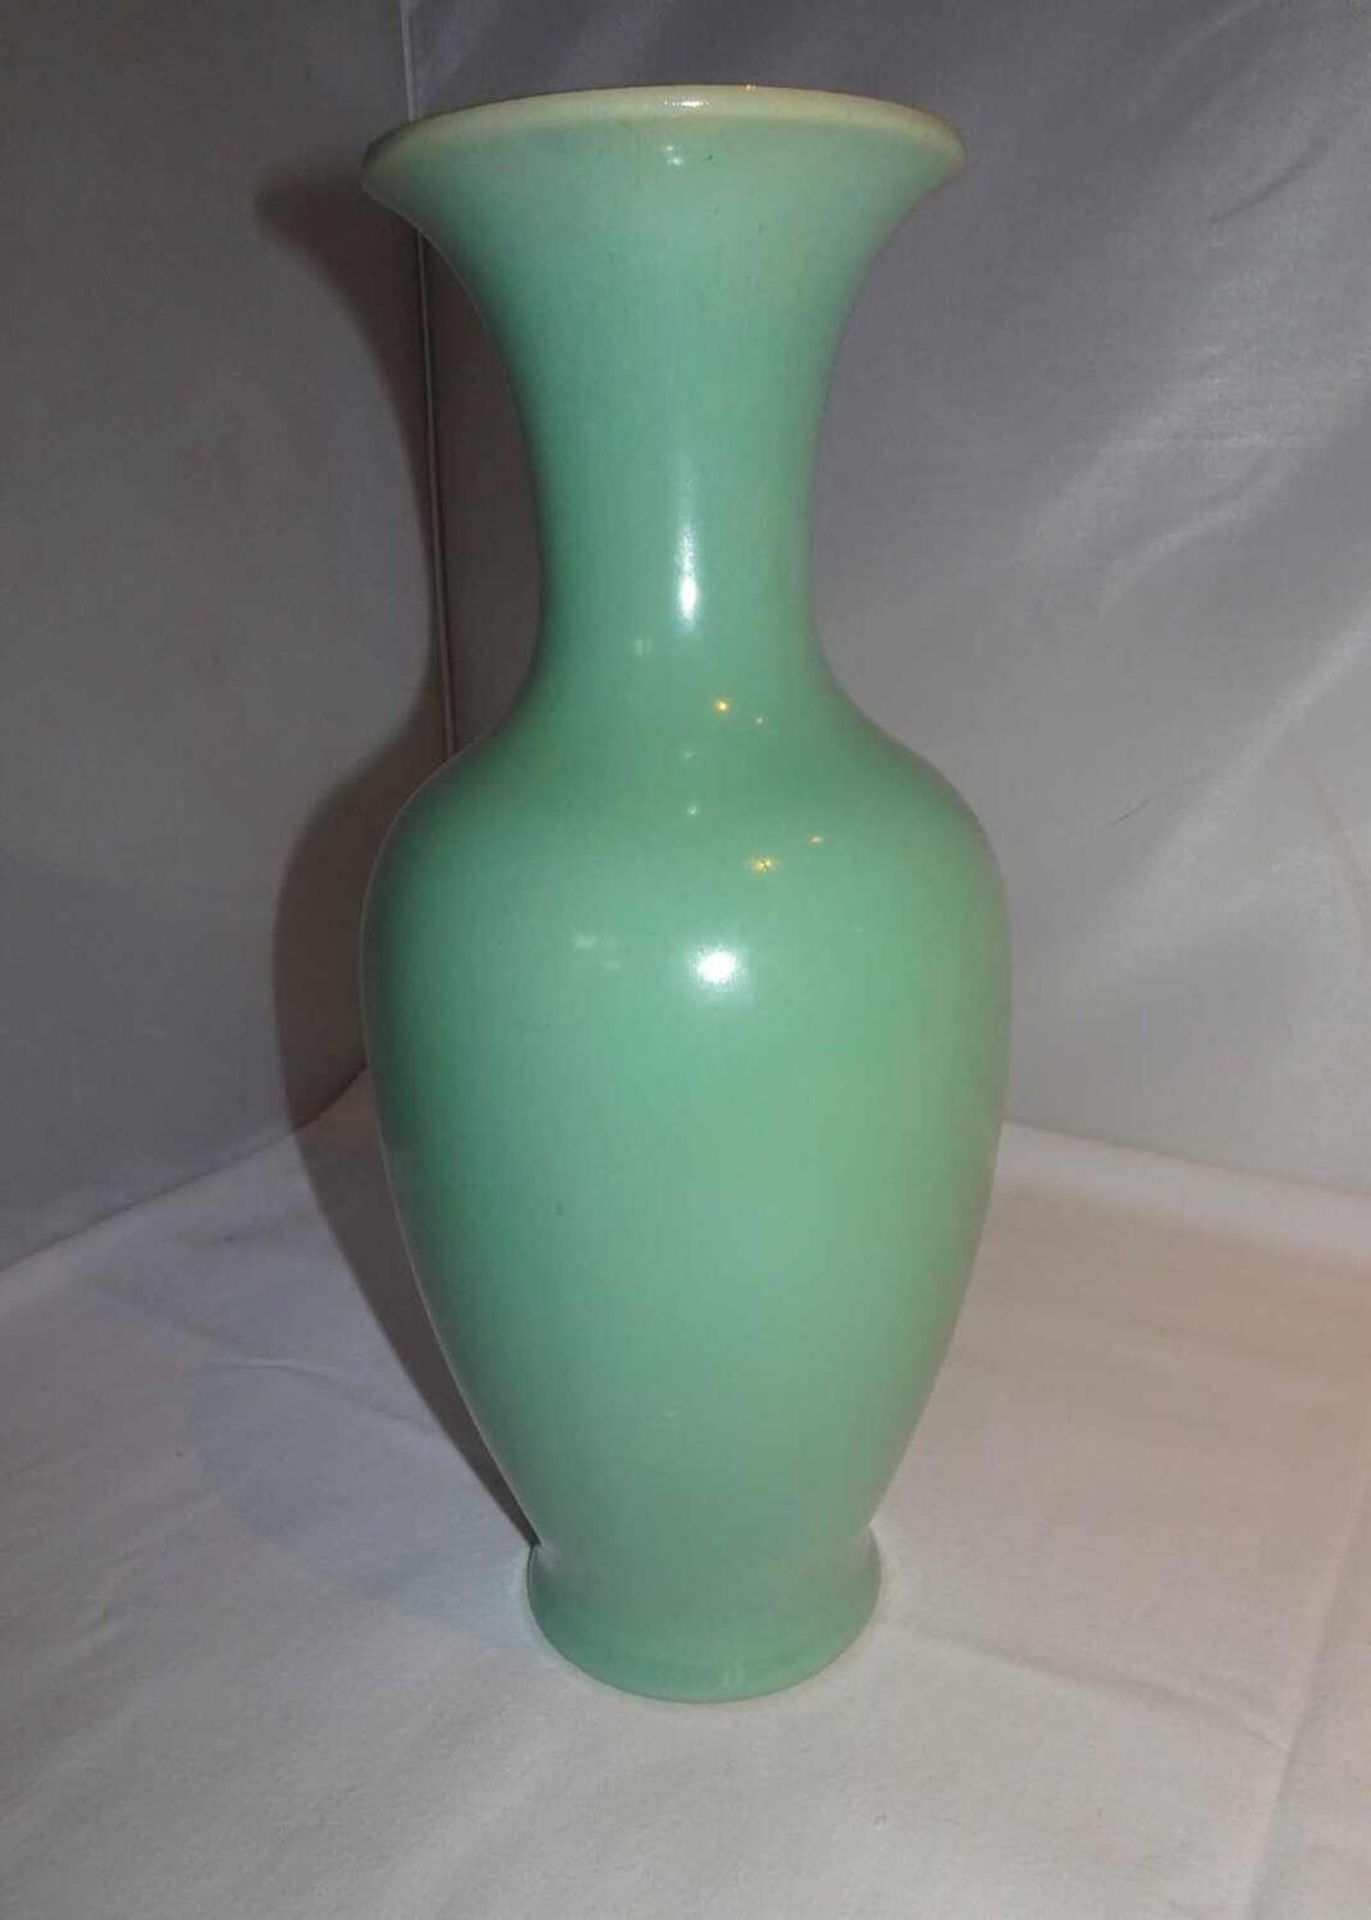 1 Schramberger-Keramikvase, Farbe: Türkis, gemarkt mit Schramberg-Marke und Form-Nr. 3988/2, Höhe